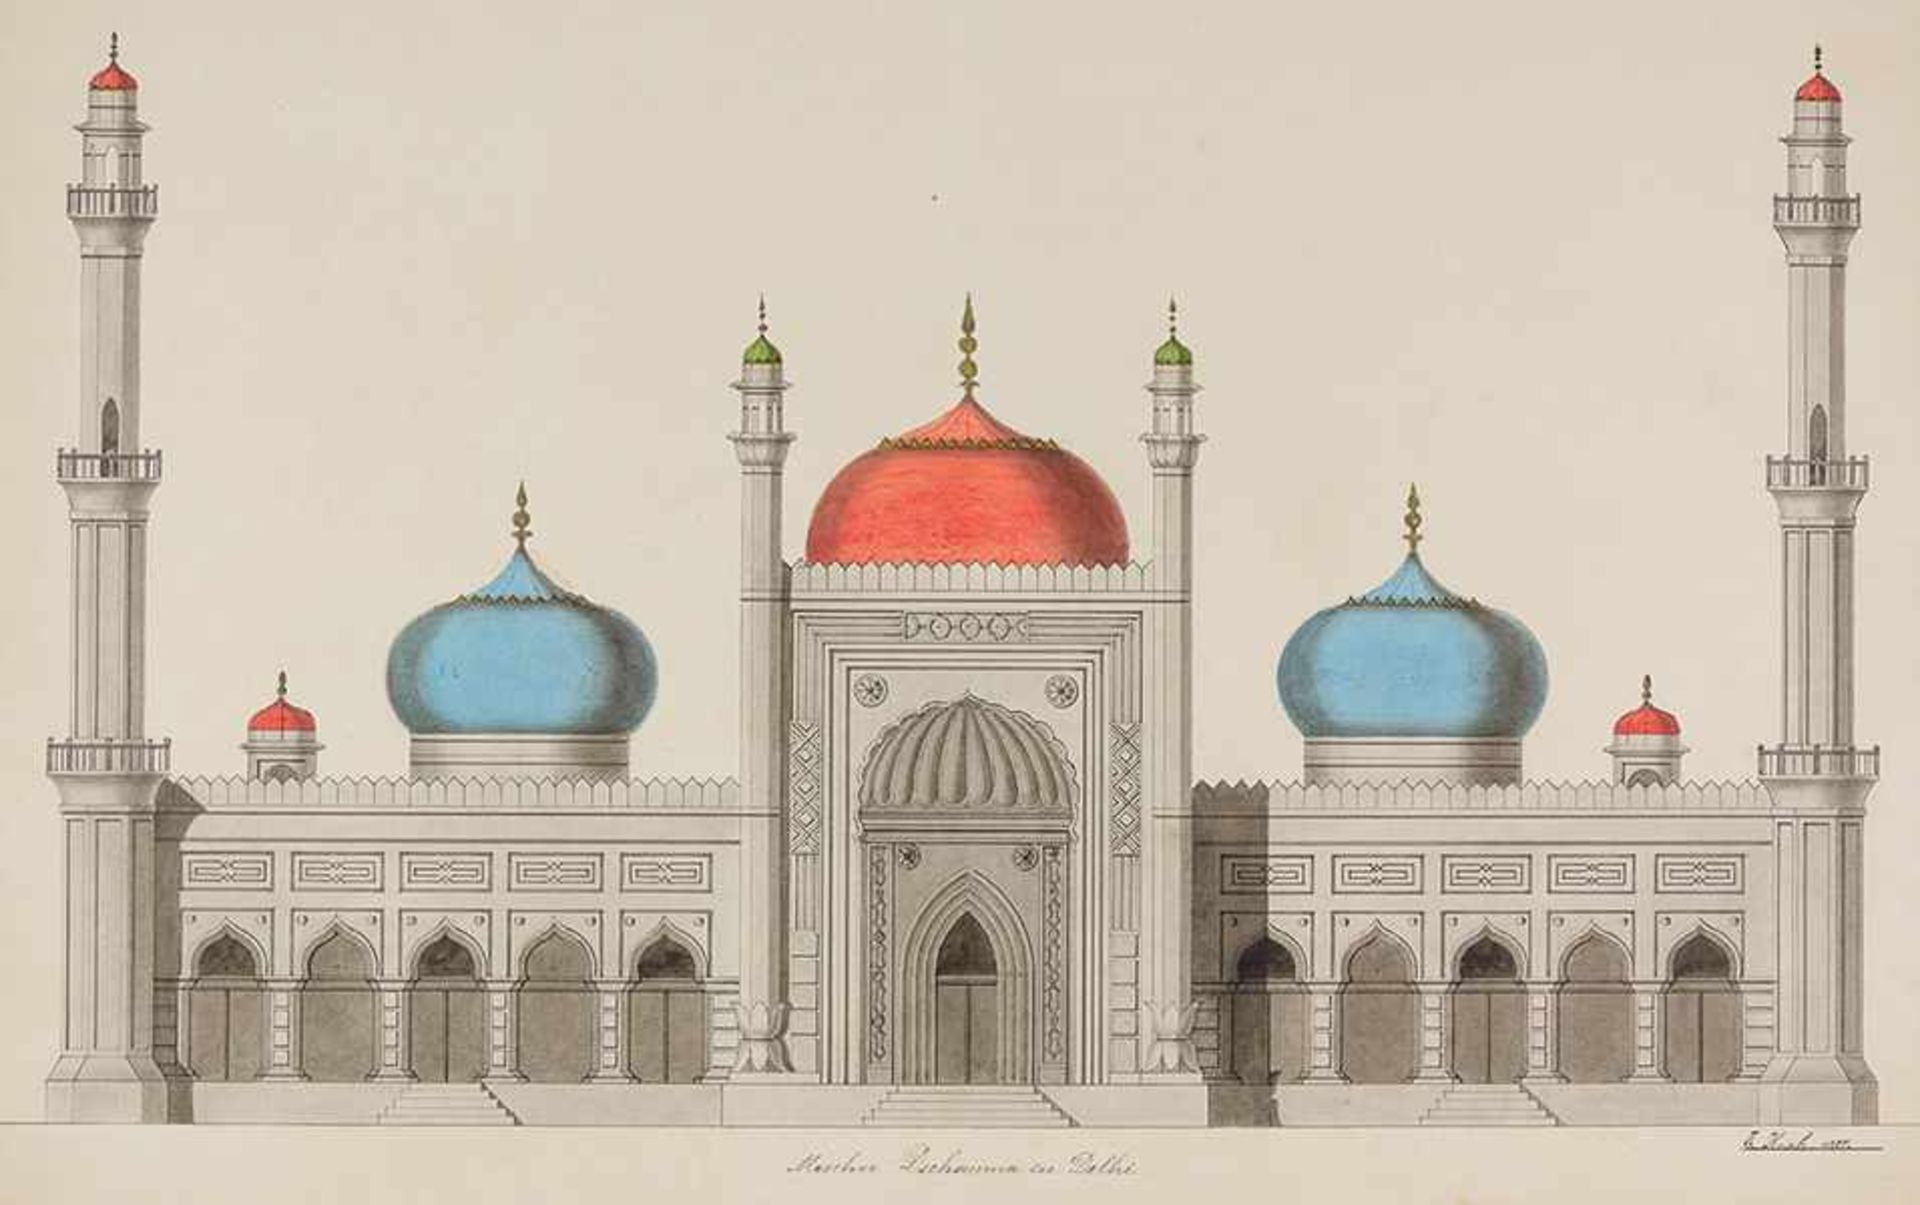 Ansichten - Delhi - - Krah, E. Moschee Dschamma (Jama) in Delhi. Kolorierte und lavierte